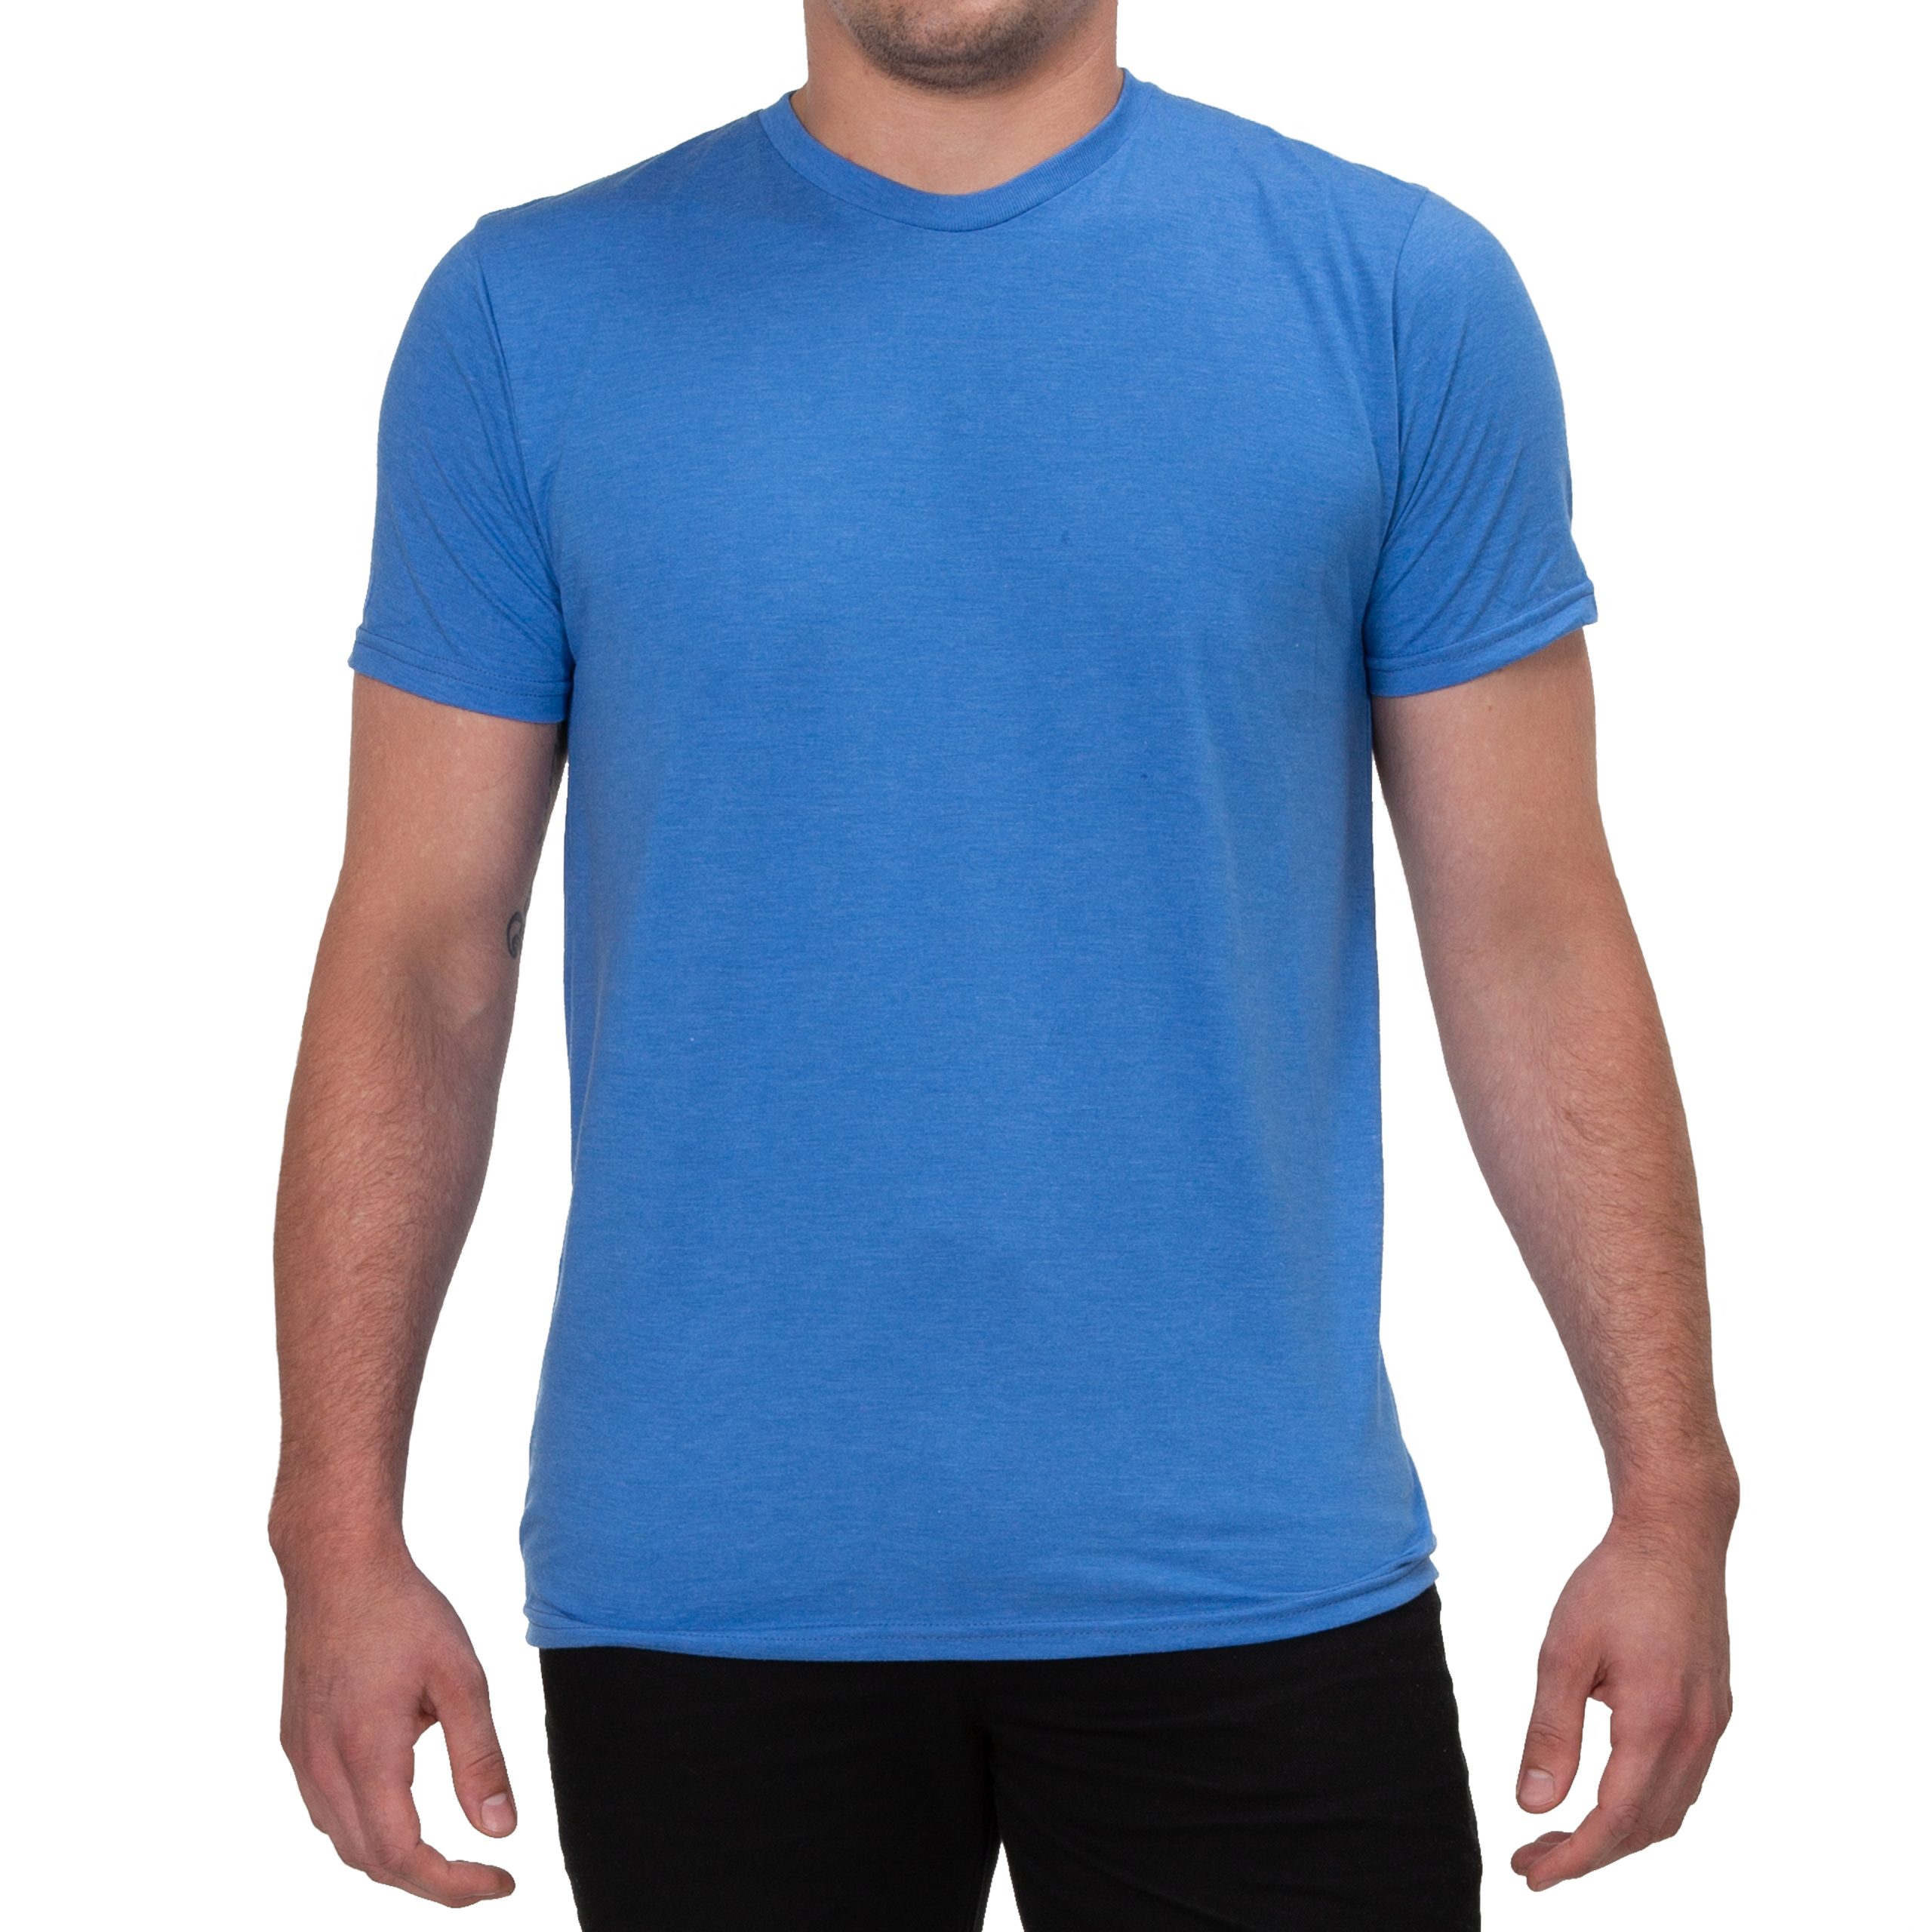 Allmade Men's Tri-Blend Crewneck T-Shirt - Concept Design Studios ...